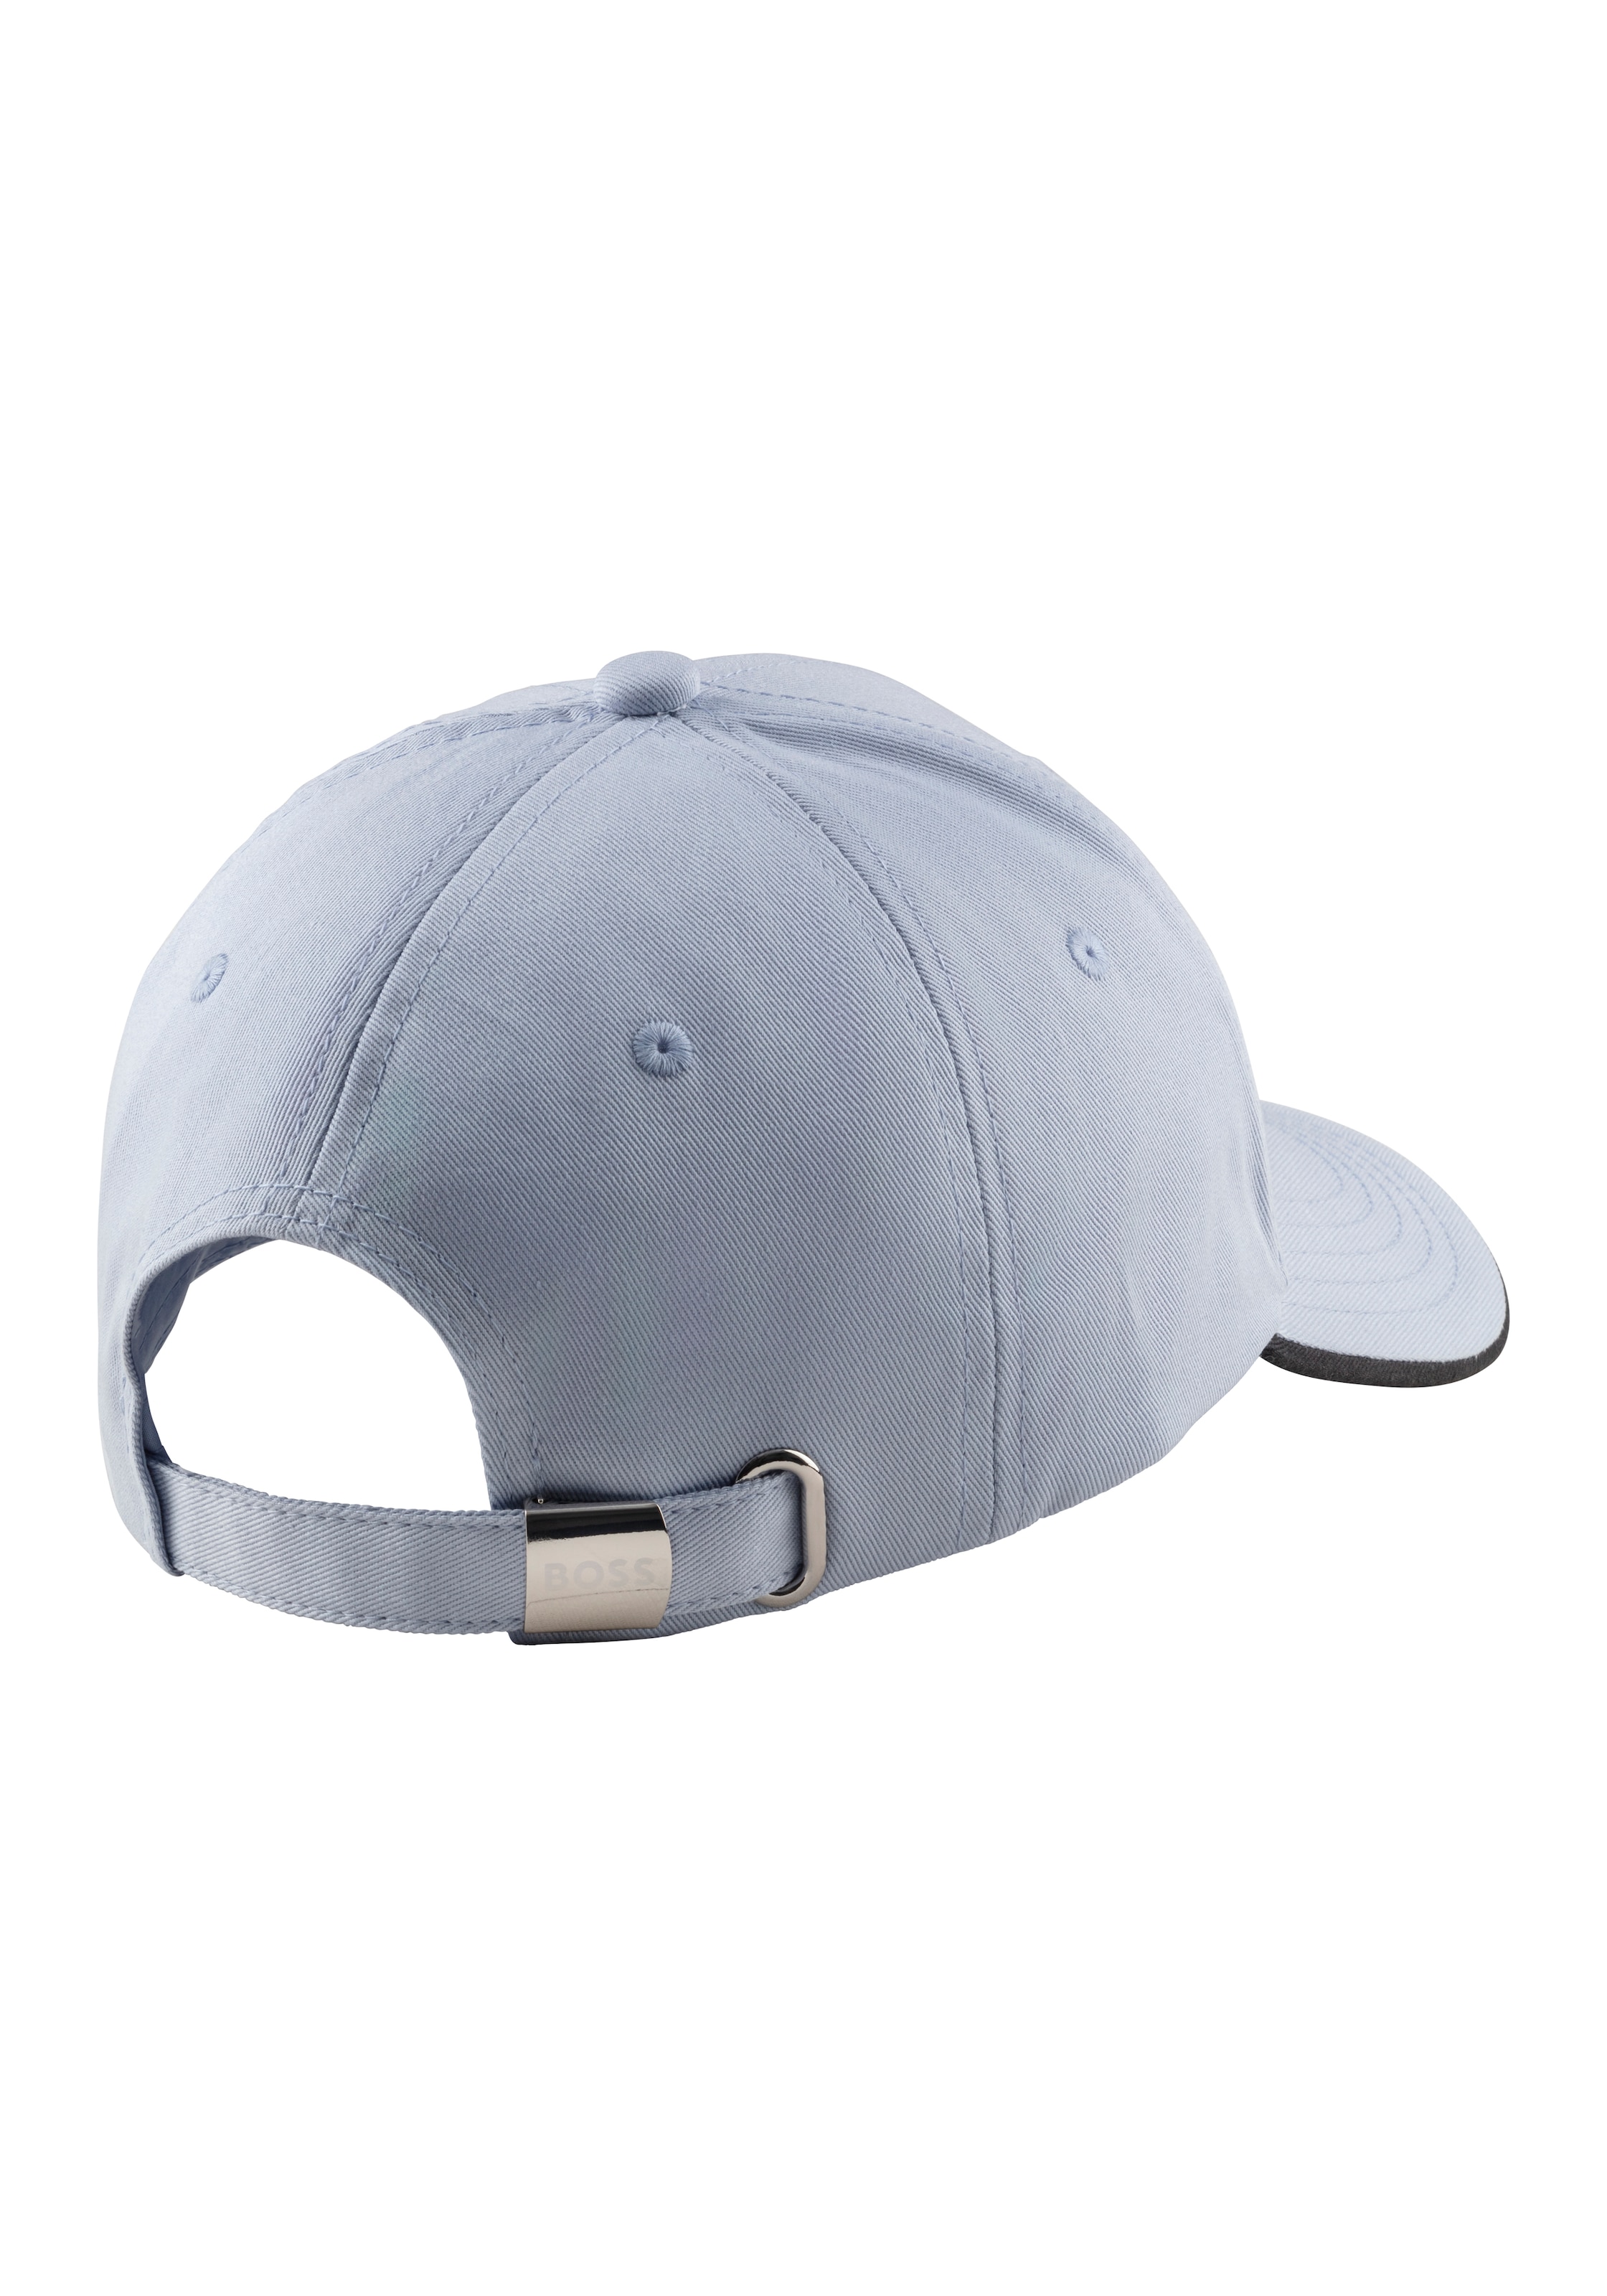 BOSS GREEN Baseball Cap »Cap-Bold«, mit BOSS Logoschriftzug, Weite verstellbar